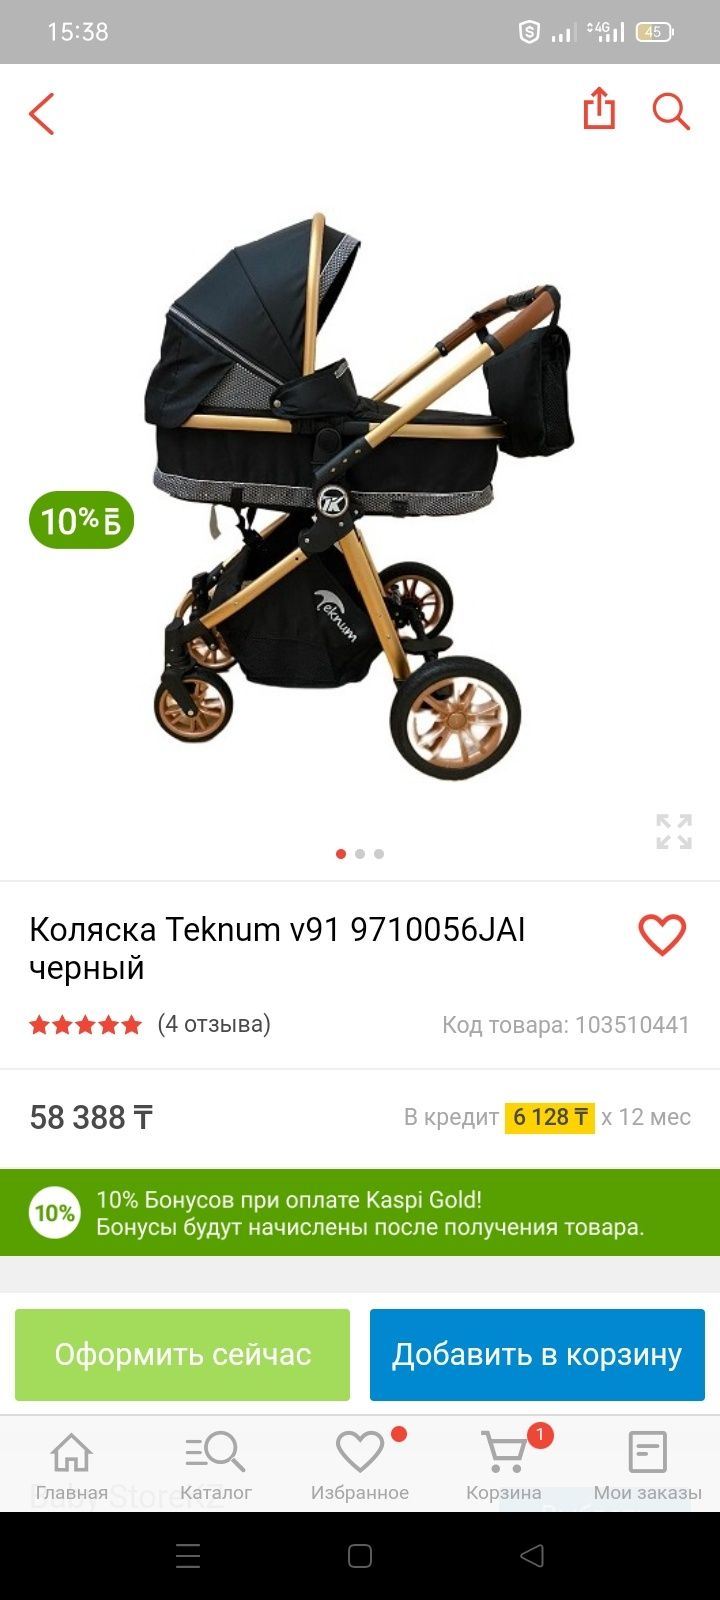 Rus:Продаётся коляска Teknum